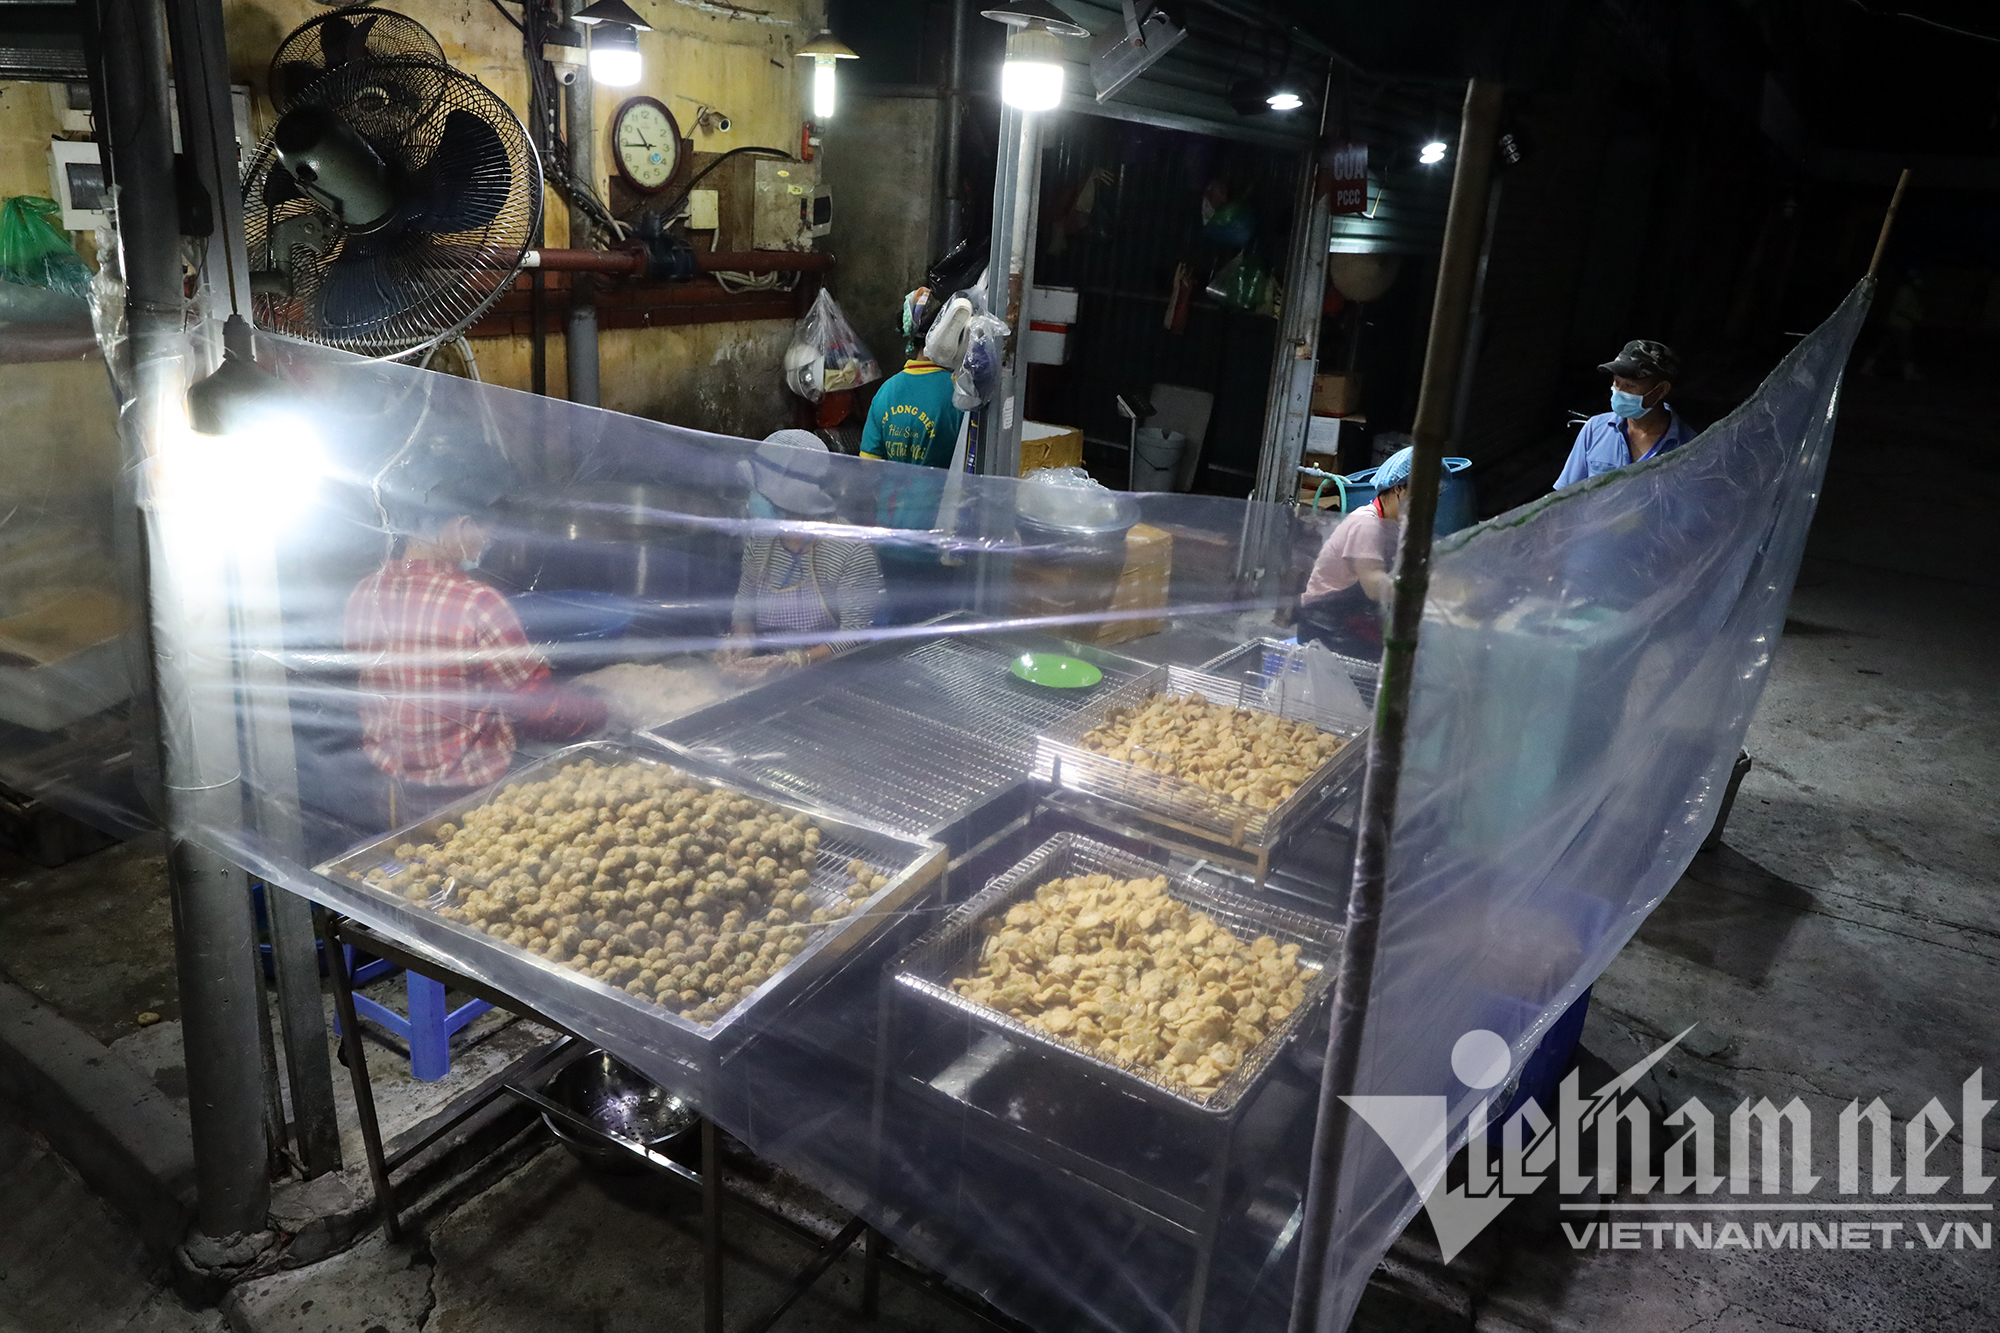 Chợ đầu mối nổi tiếng nhất Hà Nội mở lại sau hai tháng đóng cửa - Ảnh 8.